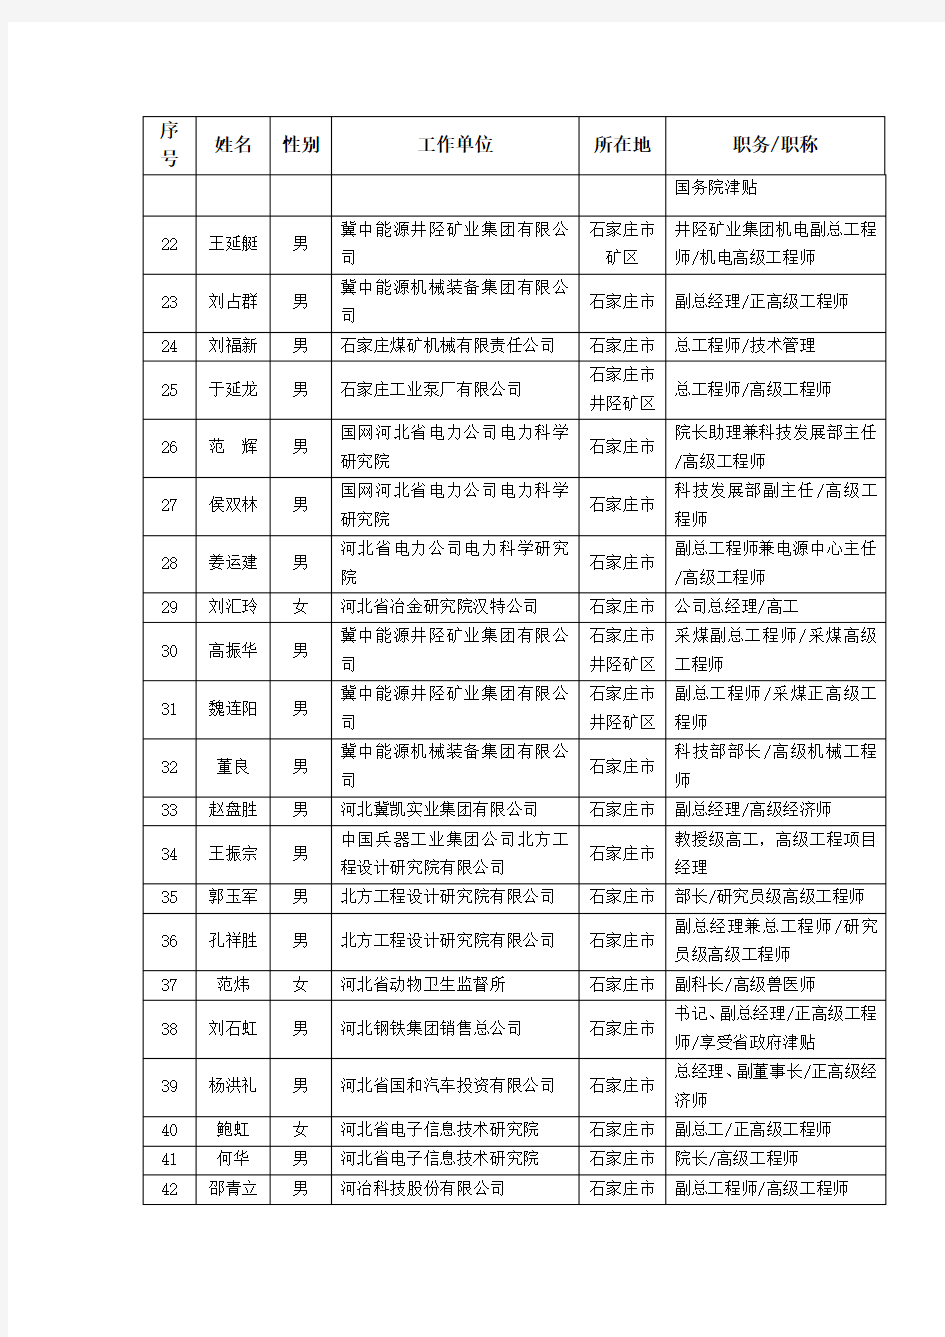 河北省科学技术厅拟认定 “加计扣除政策”鉴定技术专家人选名单